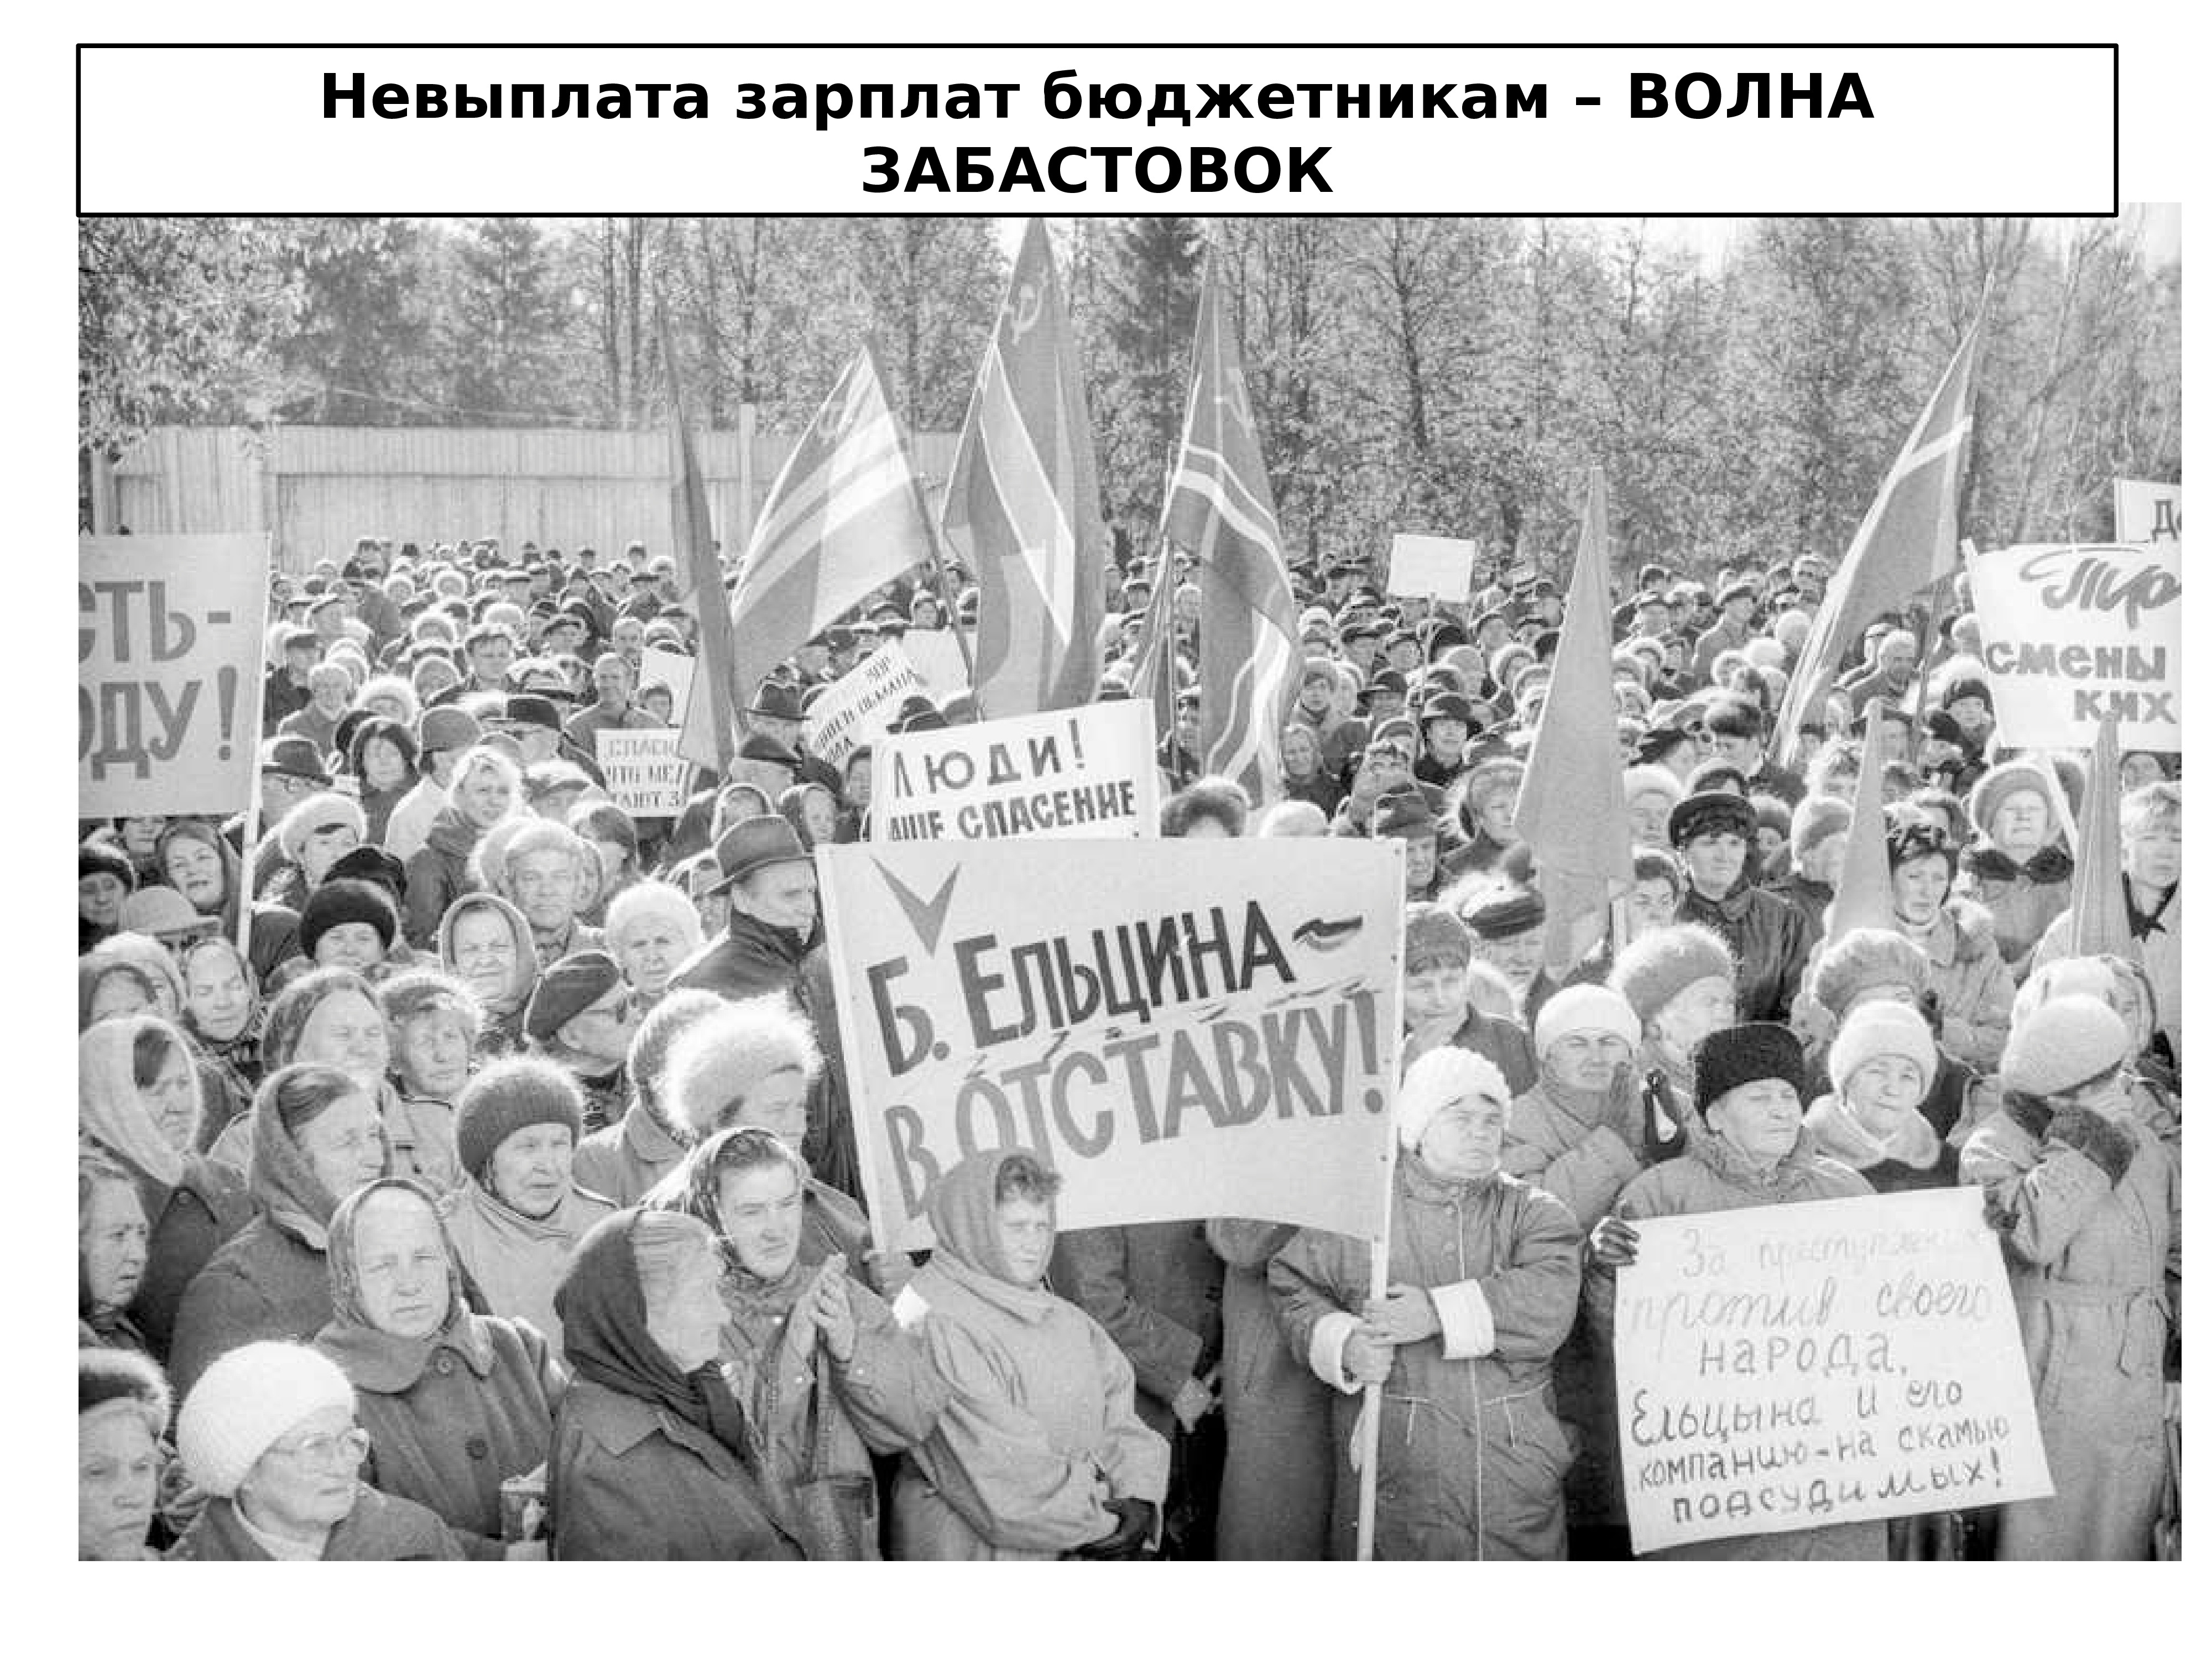 Против приватизации. Реформа Гайдара 1992 шоковая терапия. Митинги в России в 1990-е. Экономические реформы 1990-х годов.